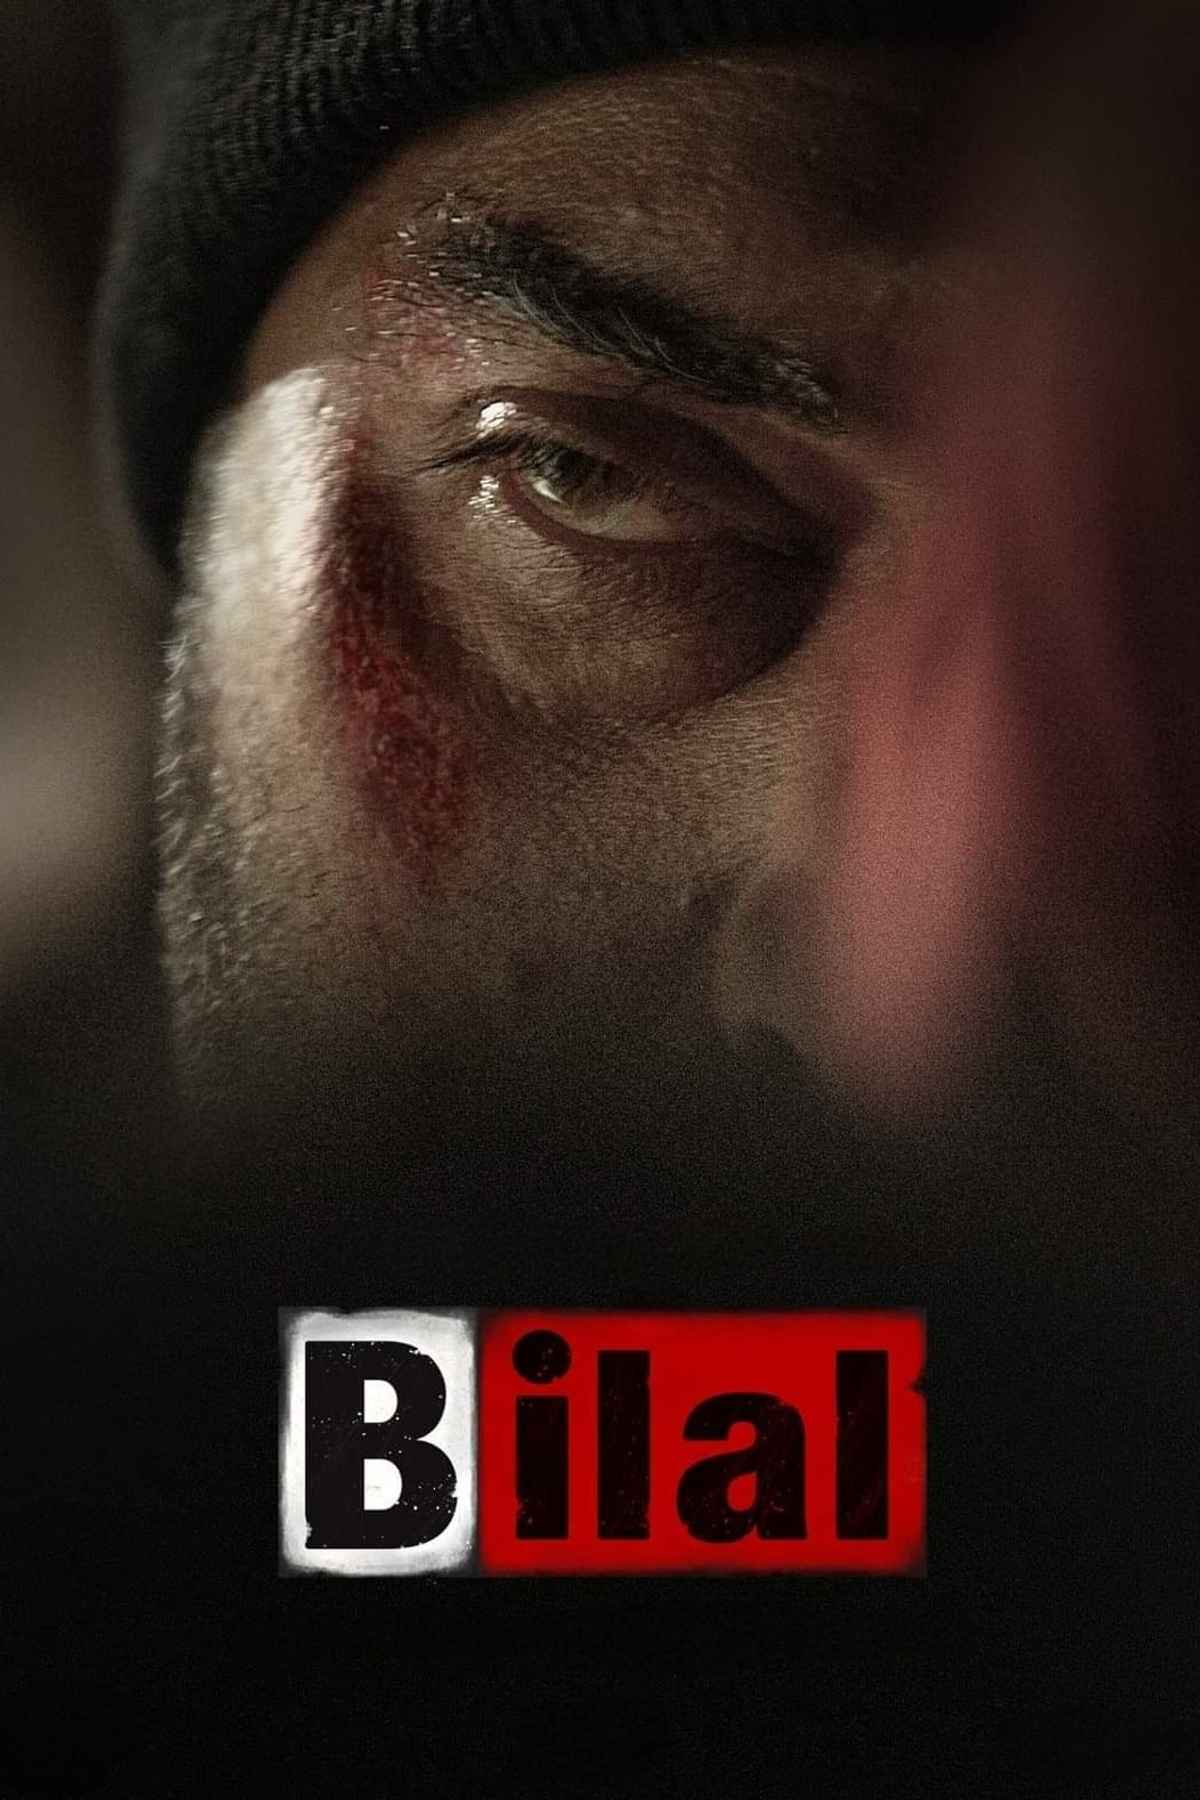 Bilal